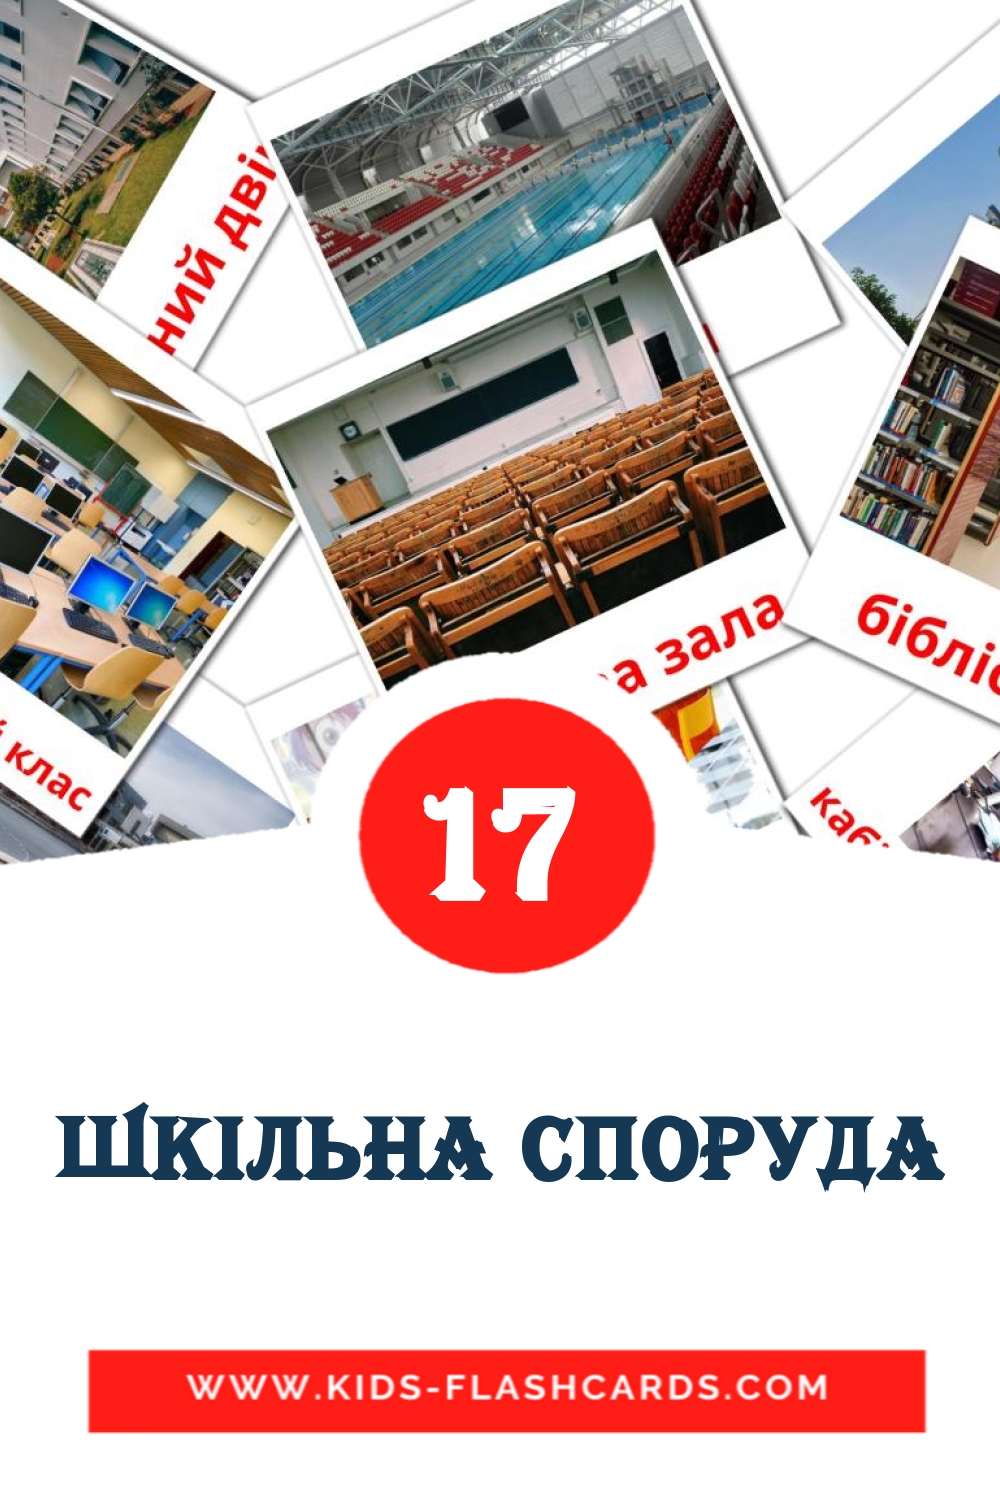 17 carte illustrate di Шкiльна споруда per la scuola materna in ucraino